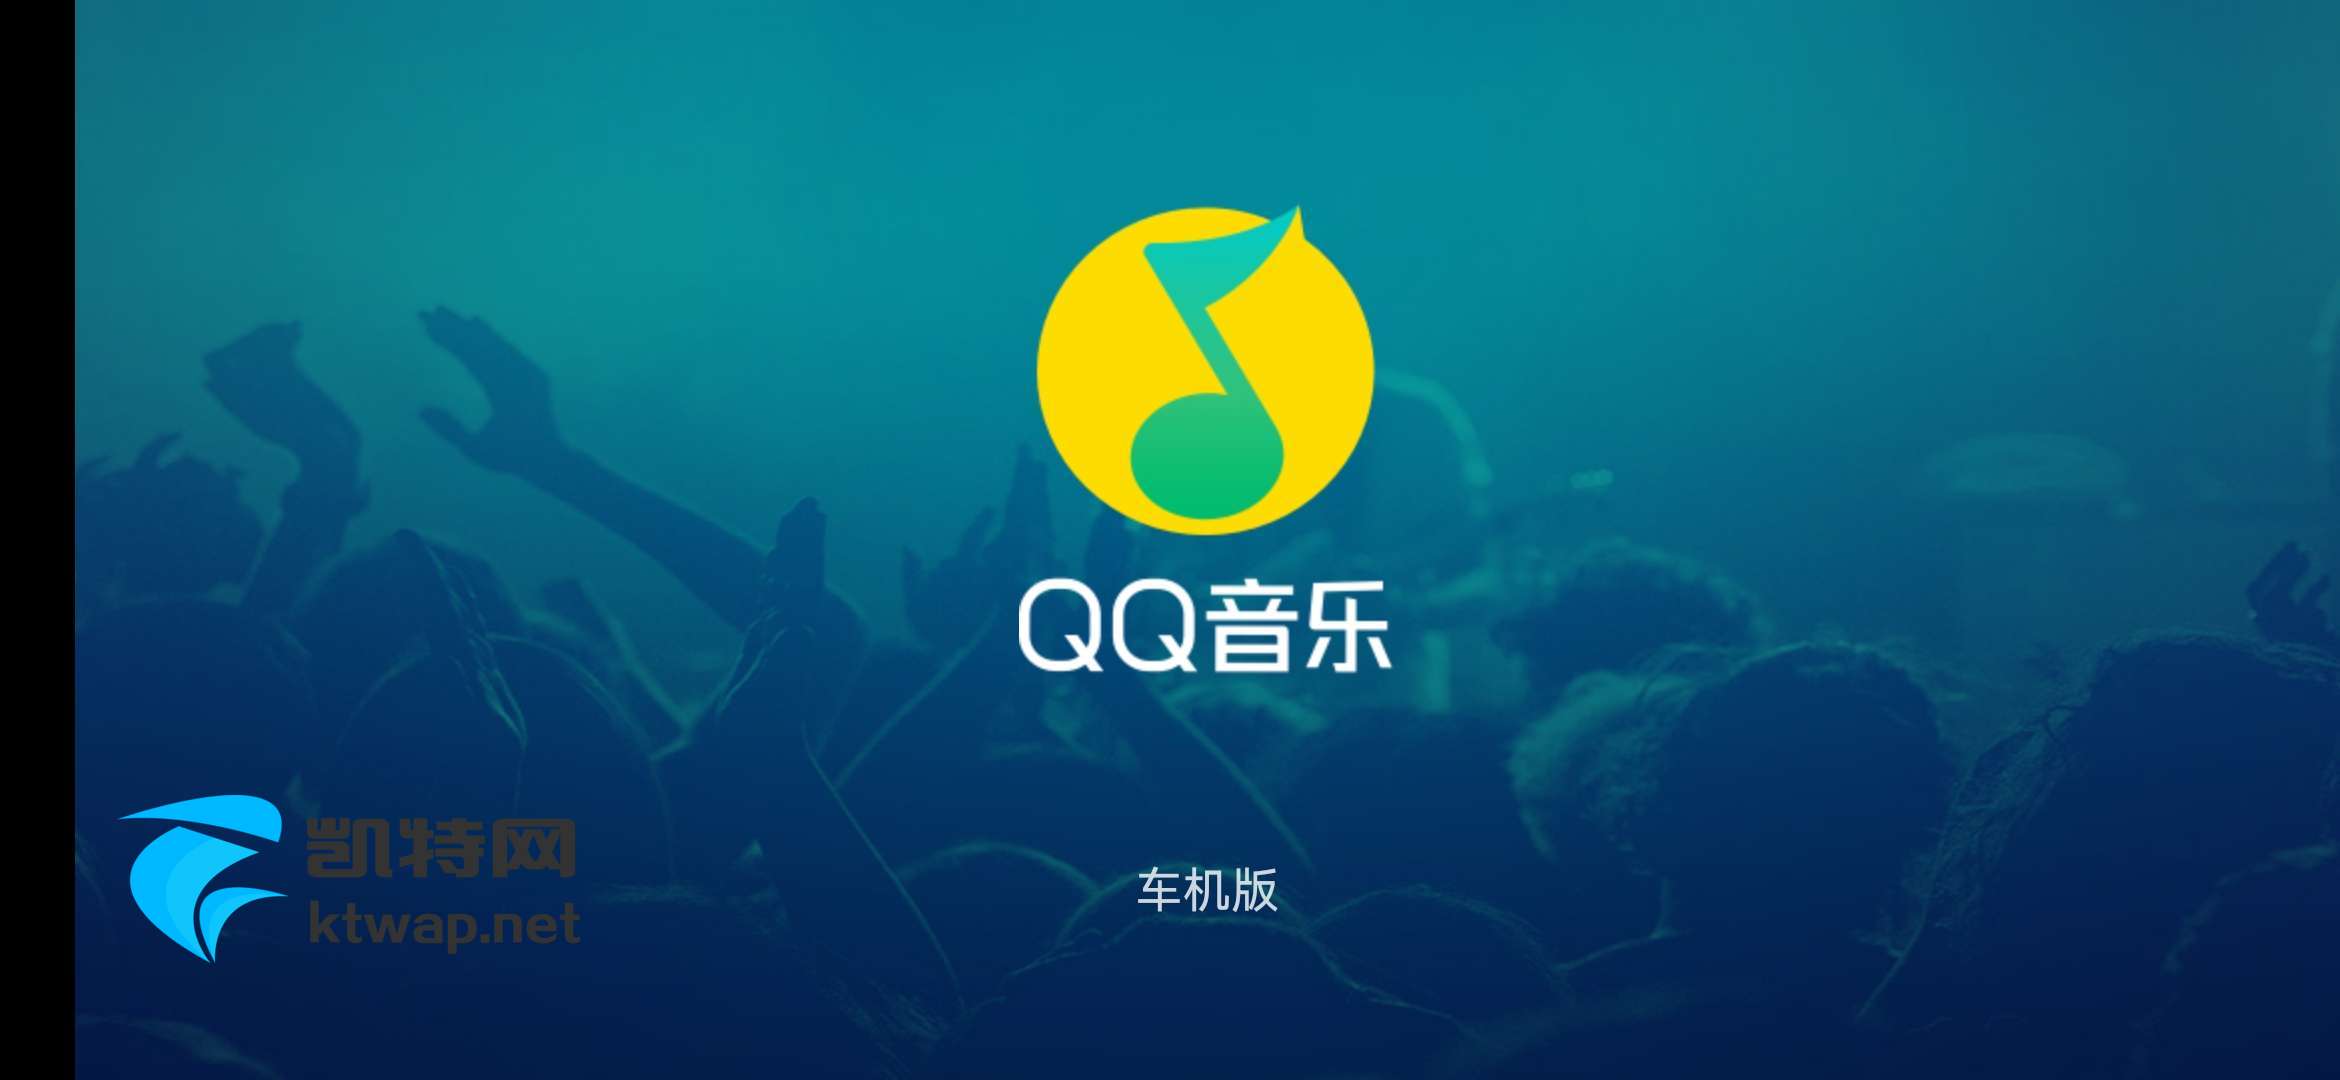 【资源分享】QQ音乐车机版新 1.9.9.1 适合有车一族安装